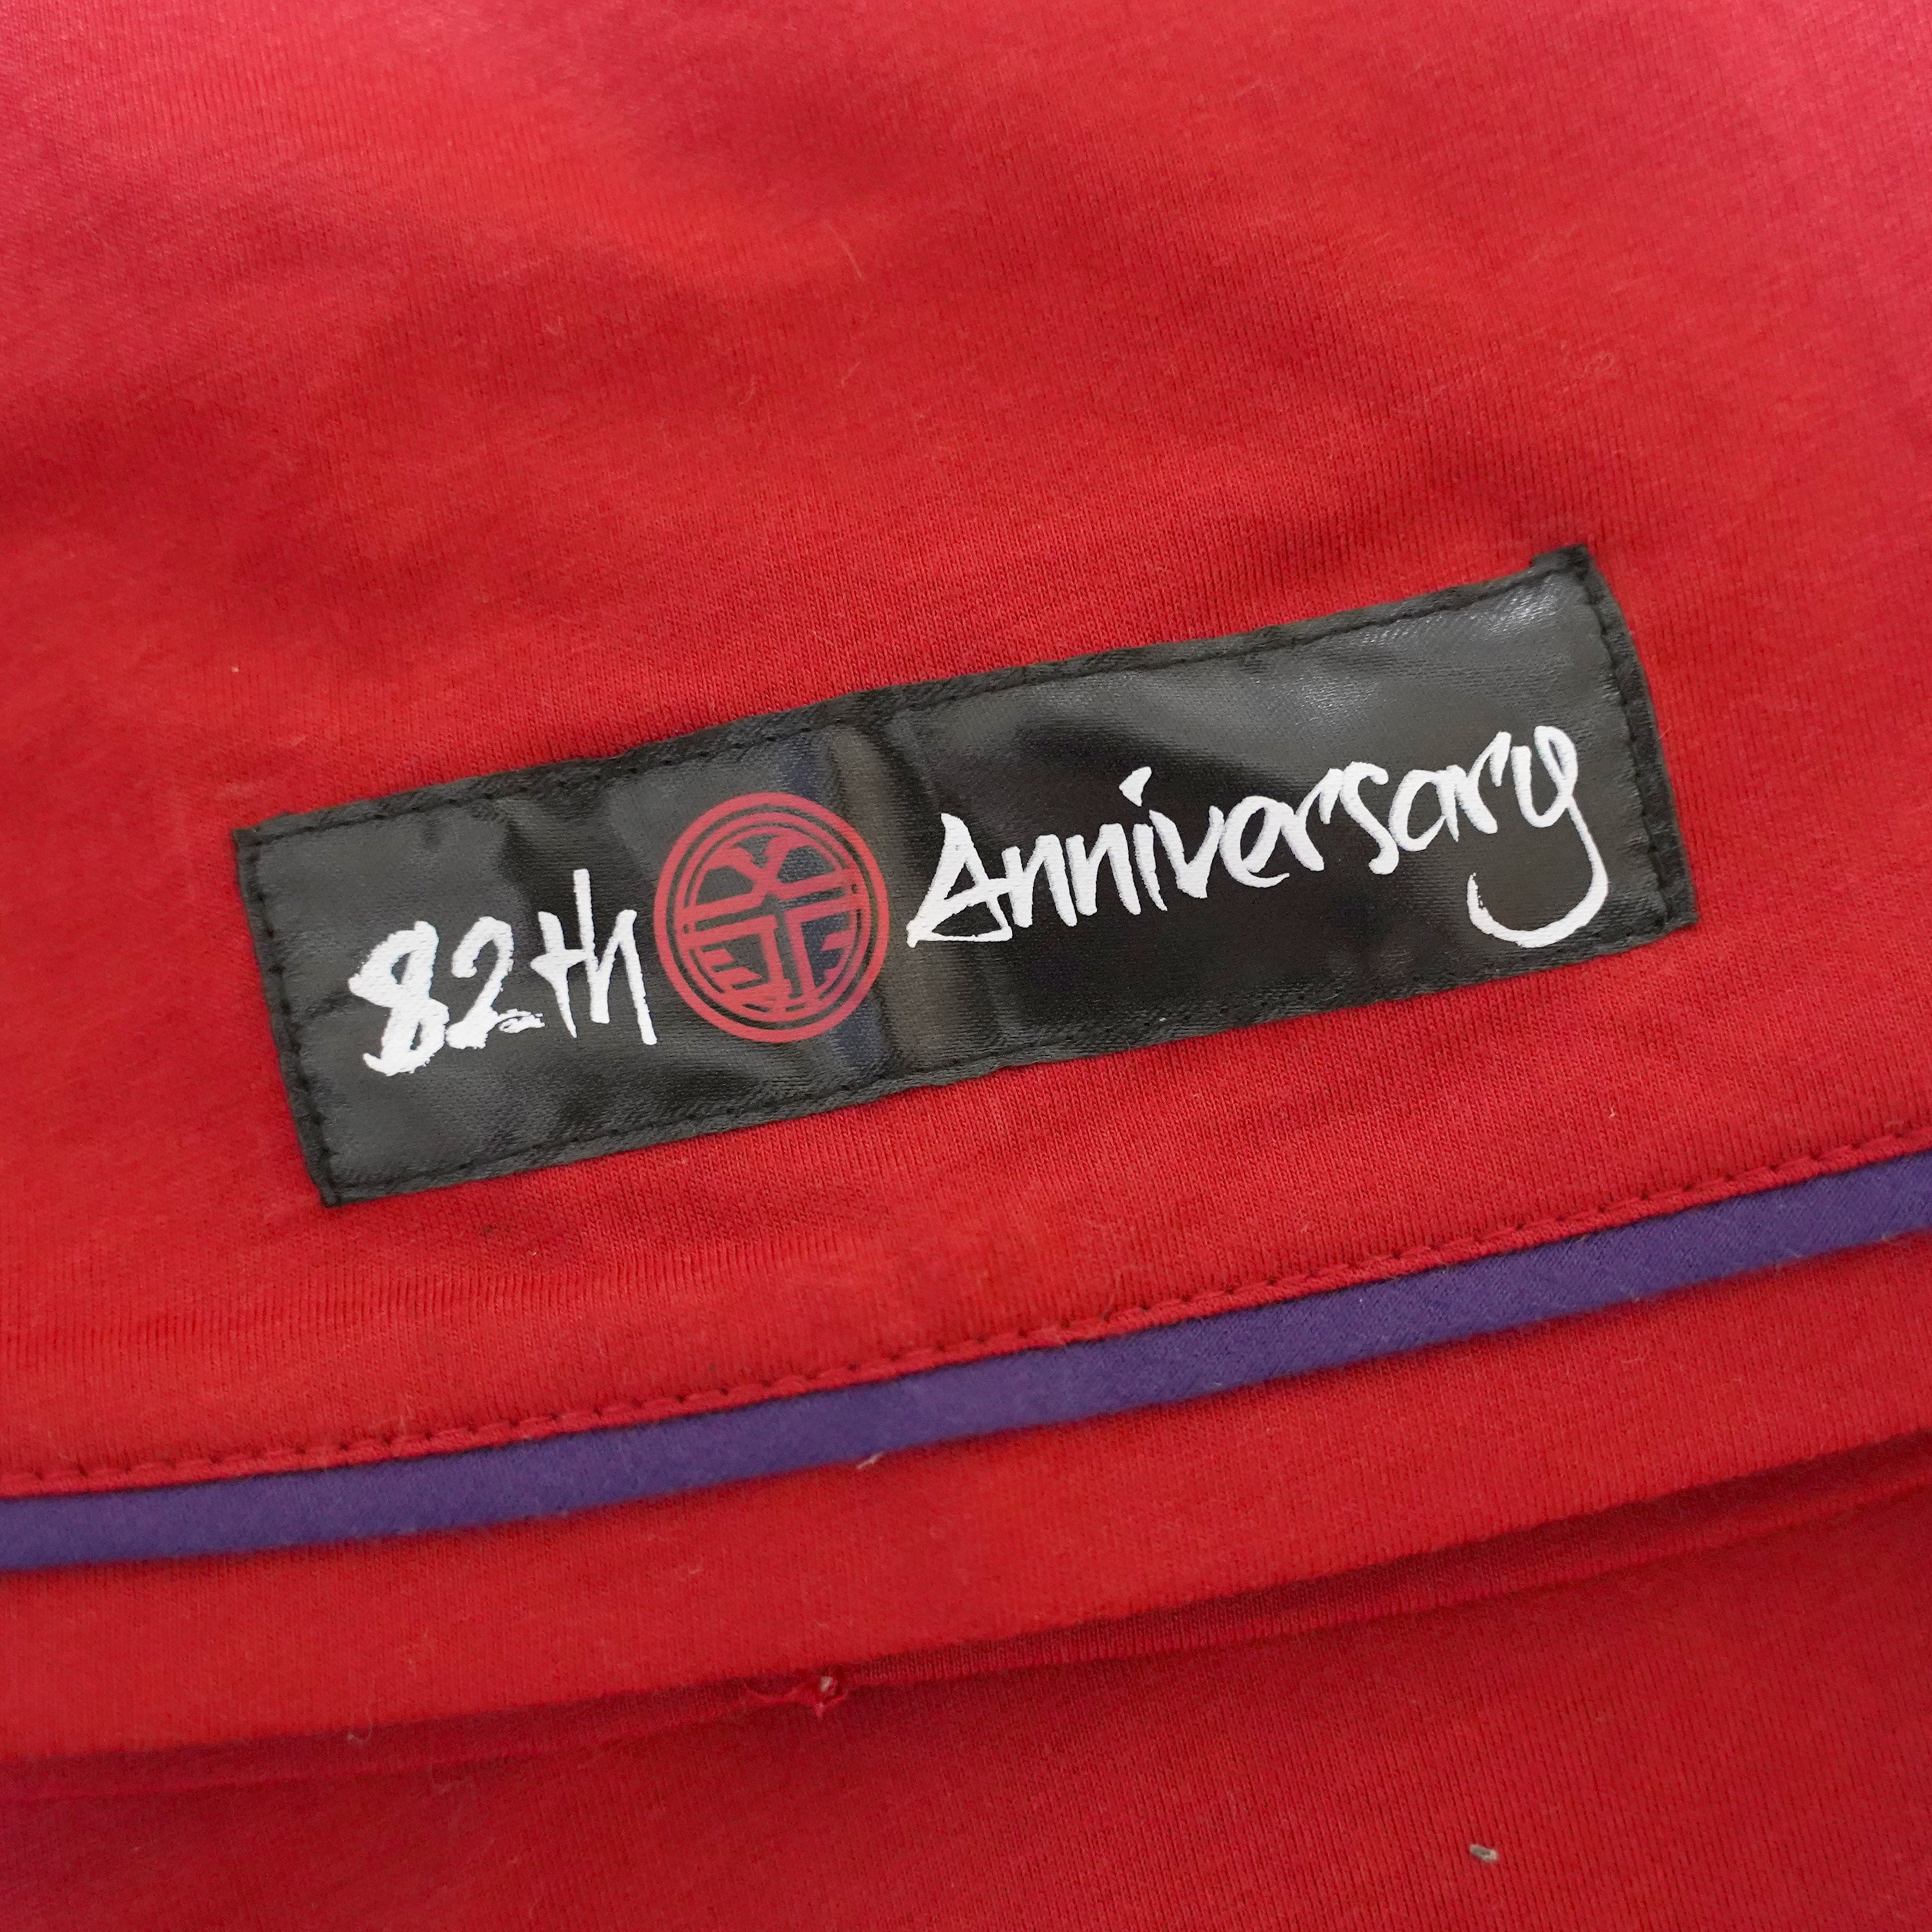 永遠の背番号「82」ベースボールシャツ (フリーサイズ) 82th Anniversary ver.